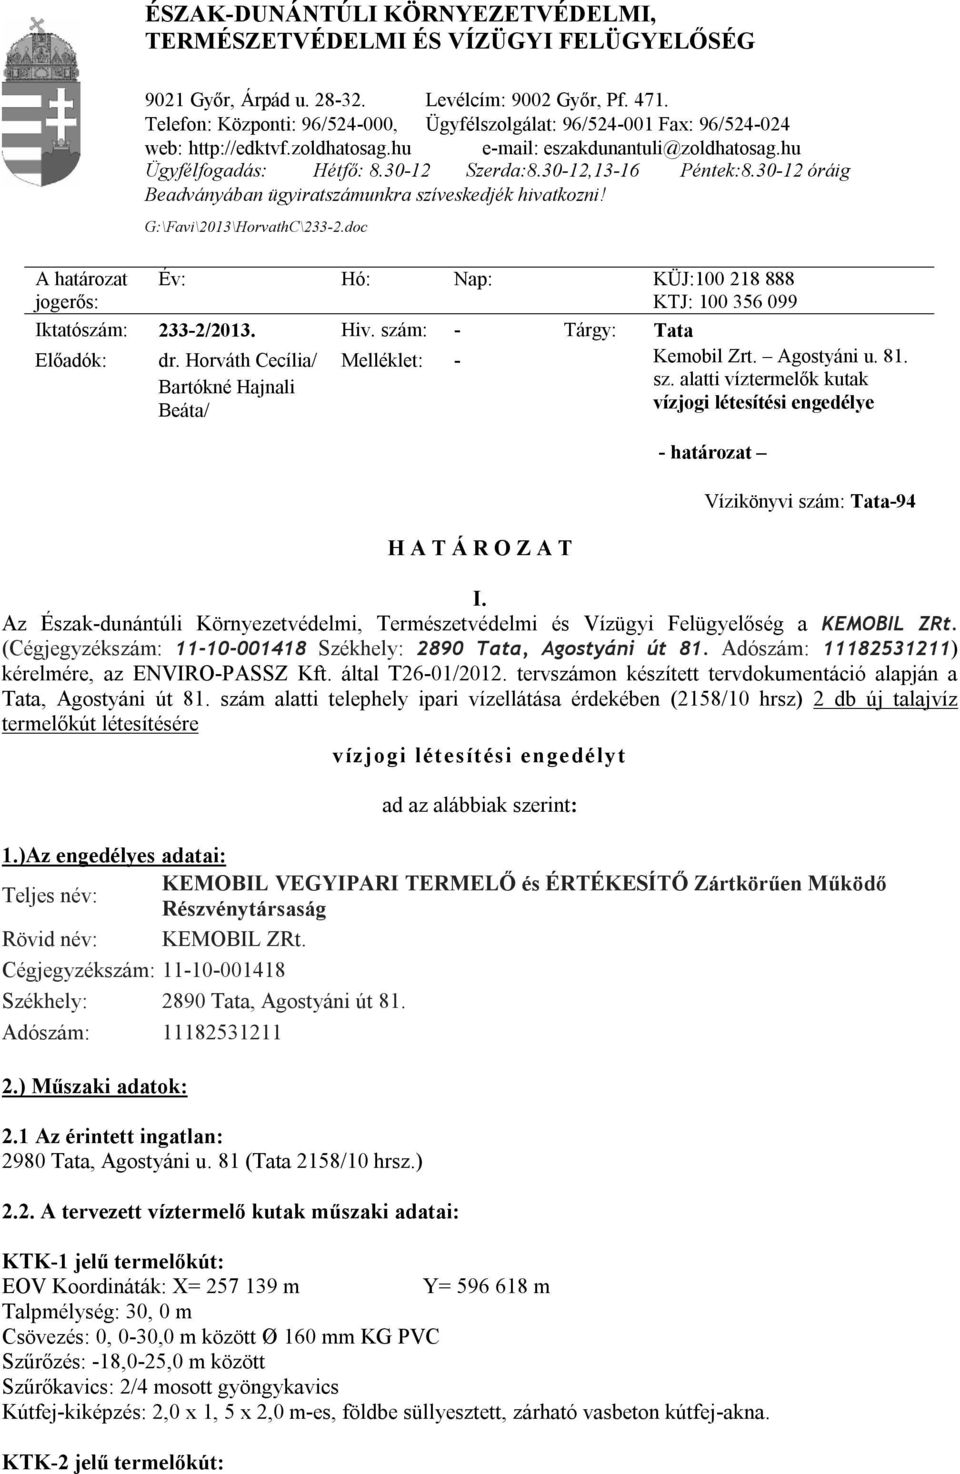 Adószám: 11182531211) kérelmére, az ENVIRO-PASSZ Kft. által T26-01/2012. tervszámon készített tervdokumentáció alapján a Tata, Agostyáni út 81.